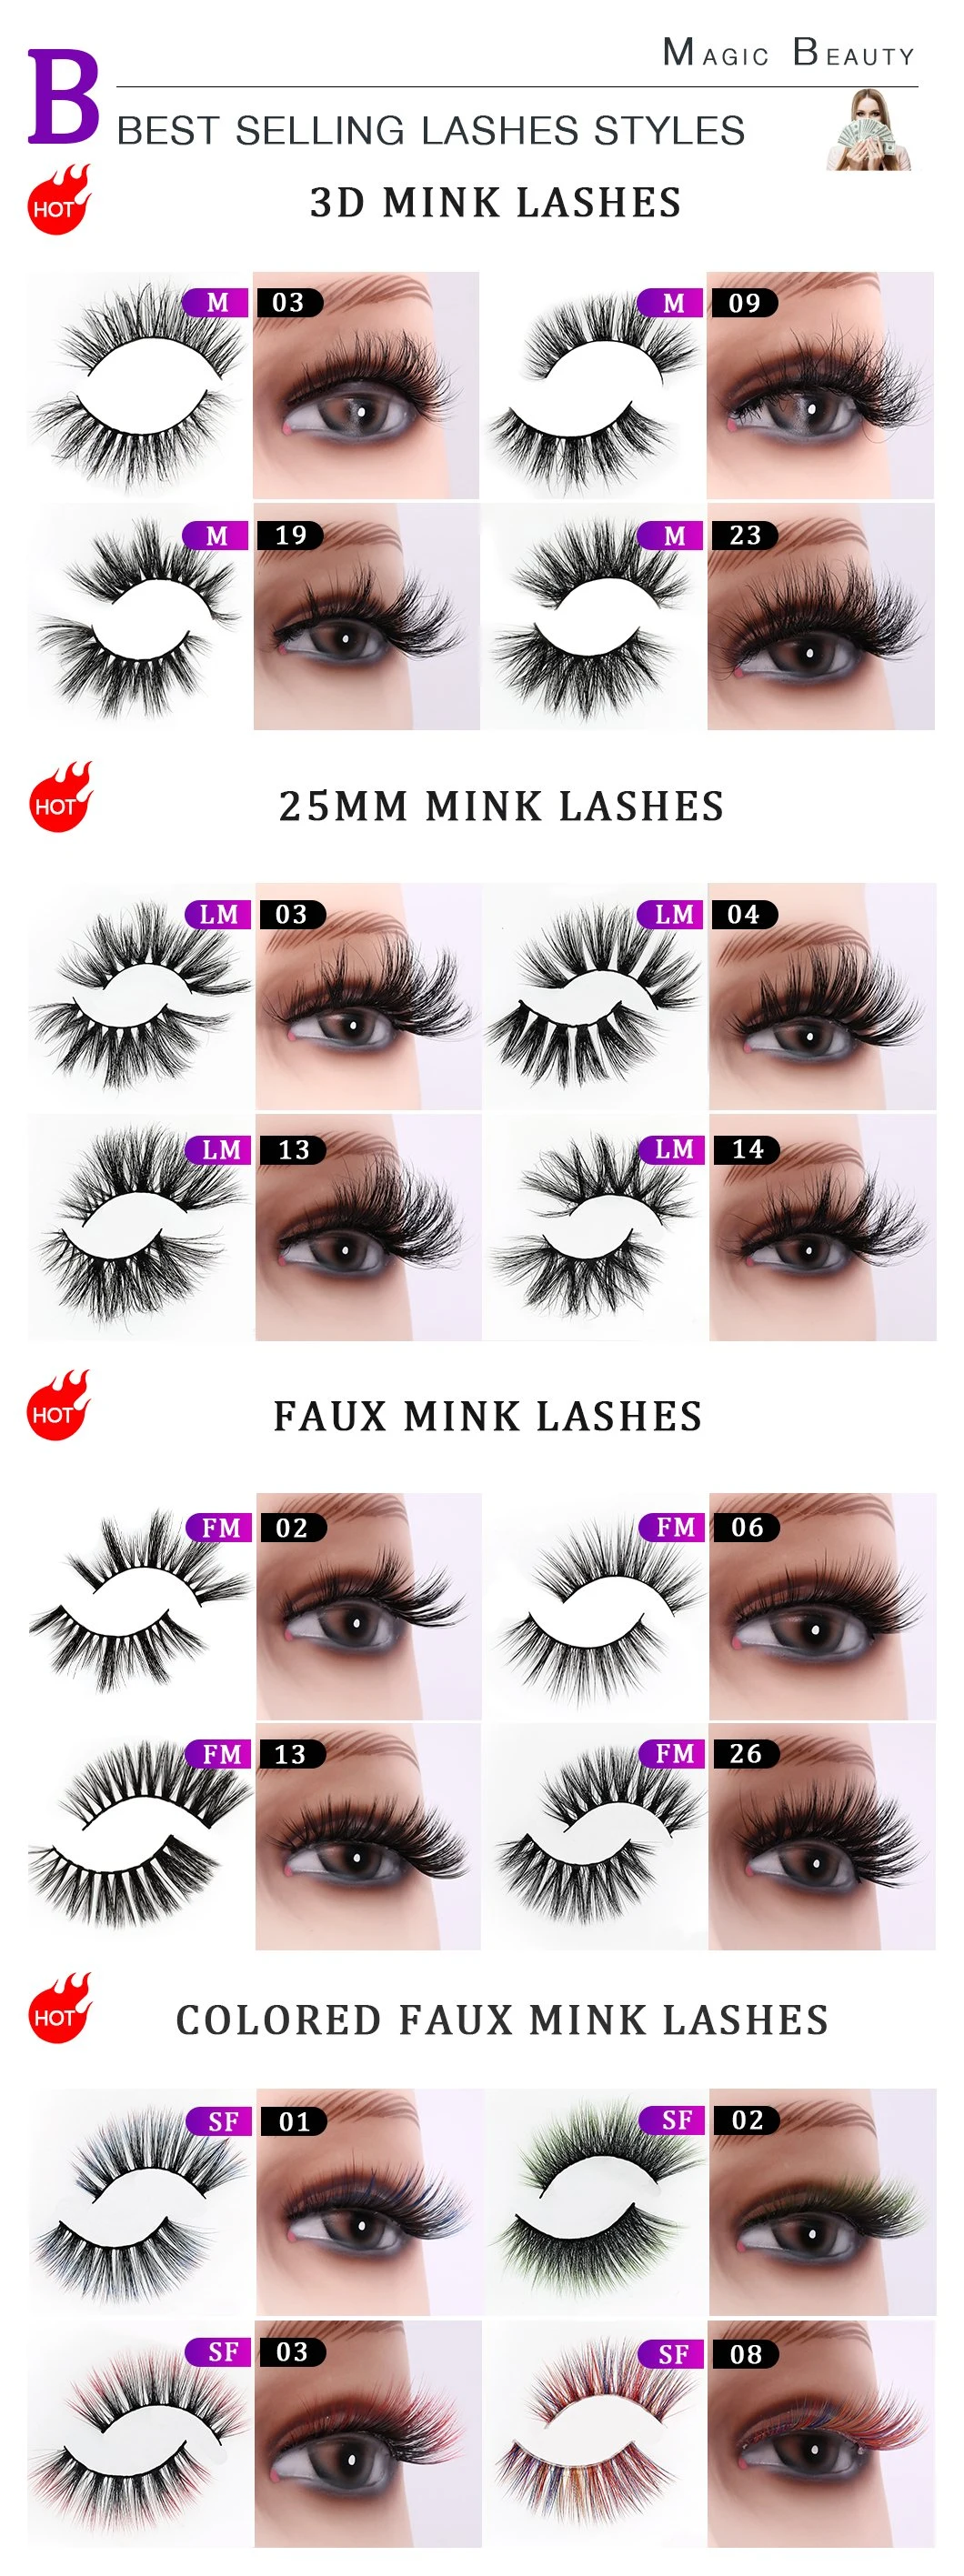 2020 Wholesale Fashion Korean PBT Fiber Lashes Colored Silk Eyelash Synthetic Eyelashes with Cosmetics